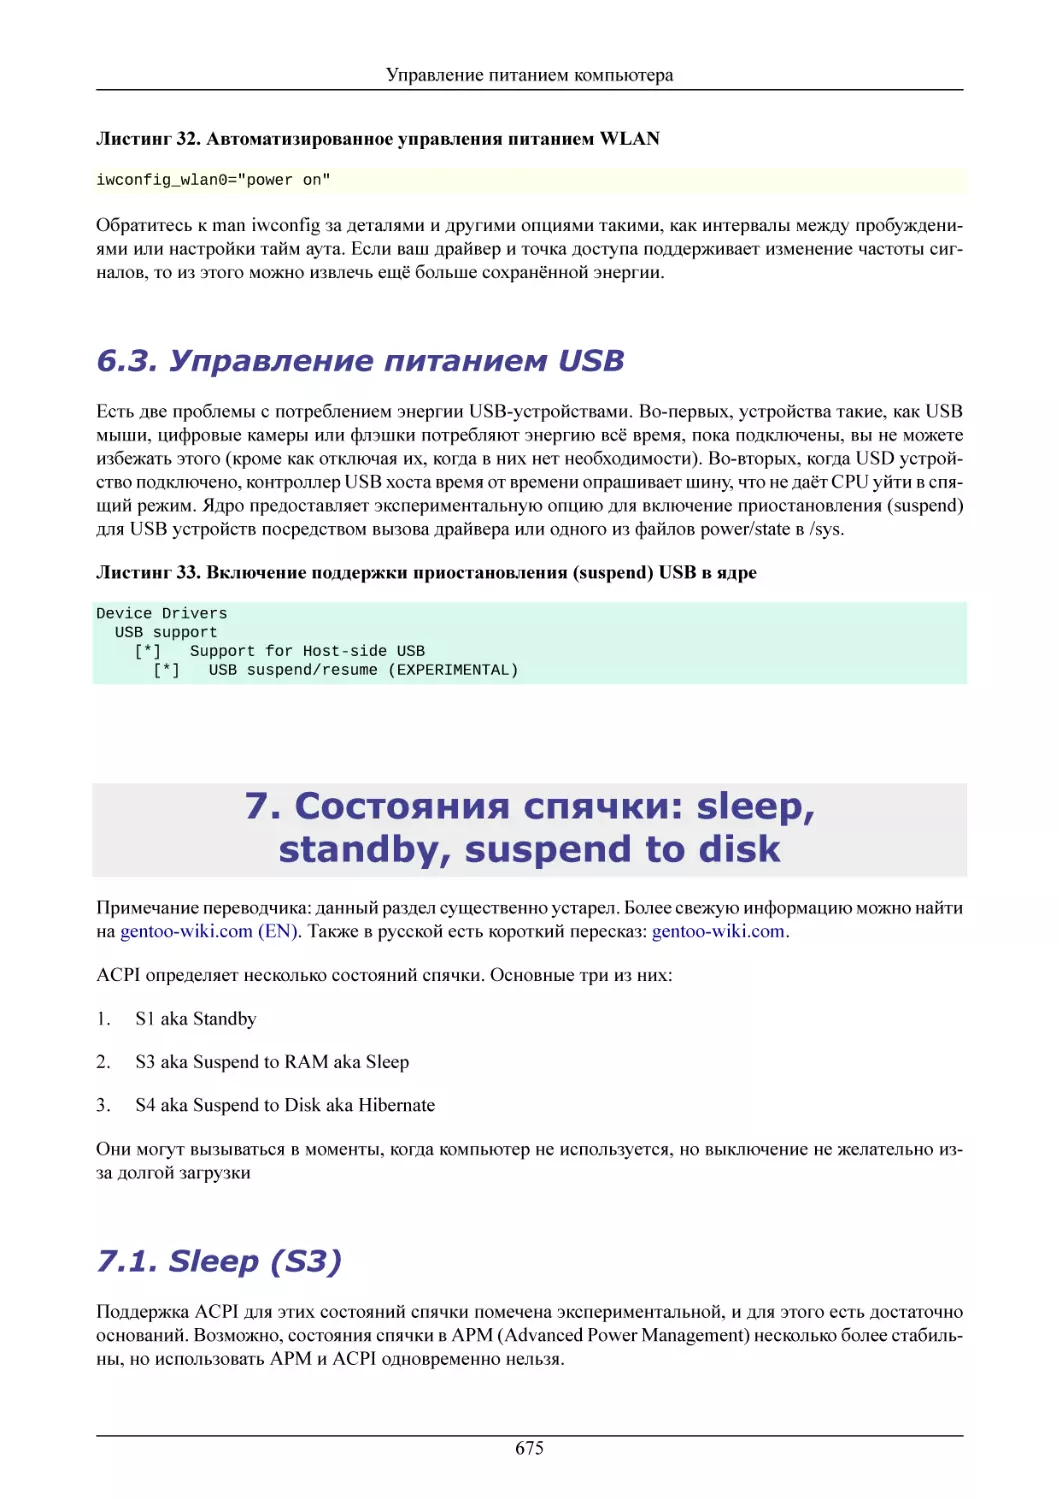 Управление питанием USB
Состояния спячки
Sleep (S3)